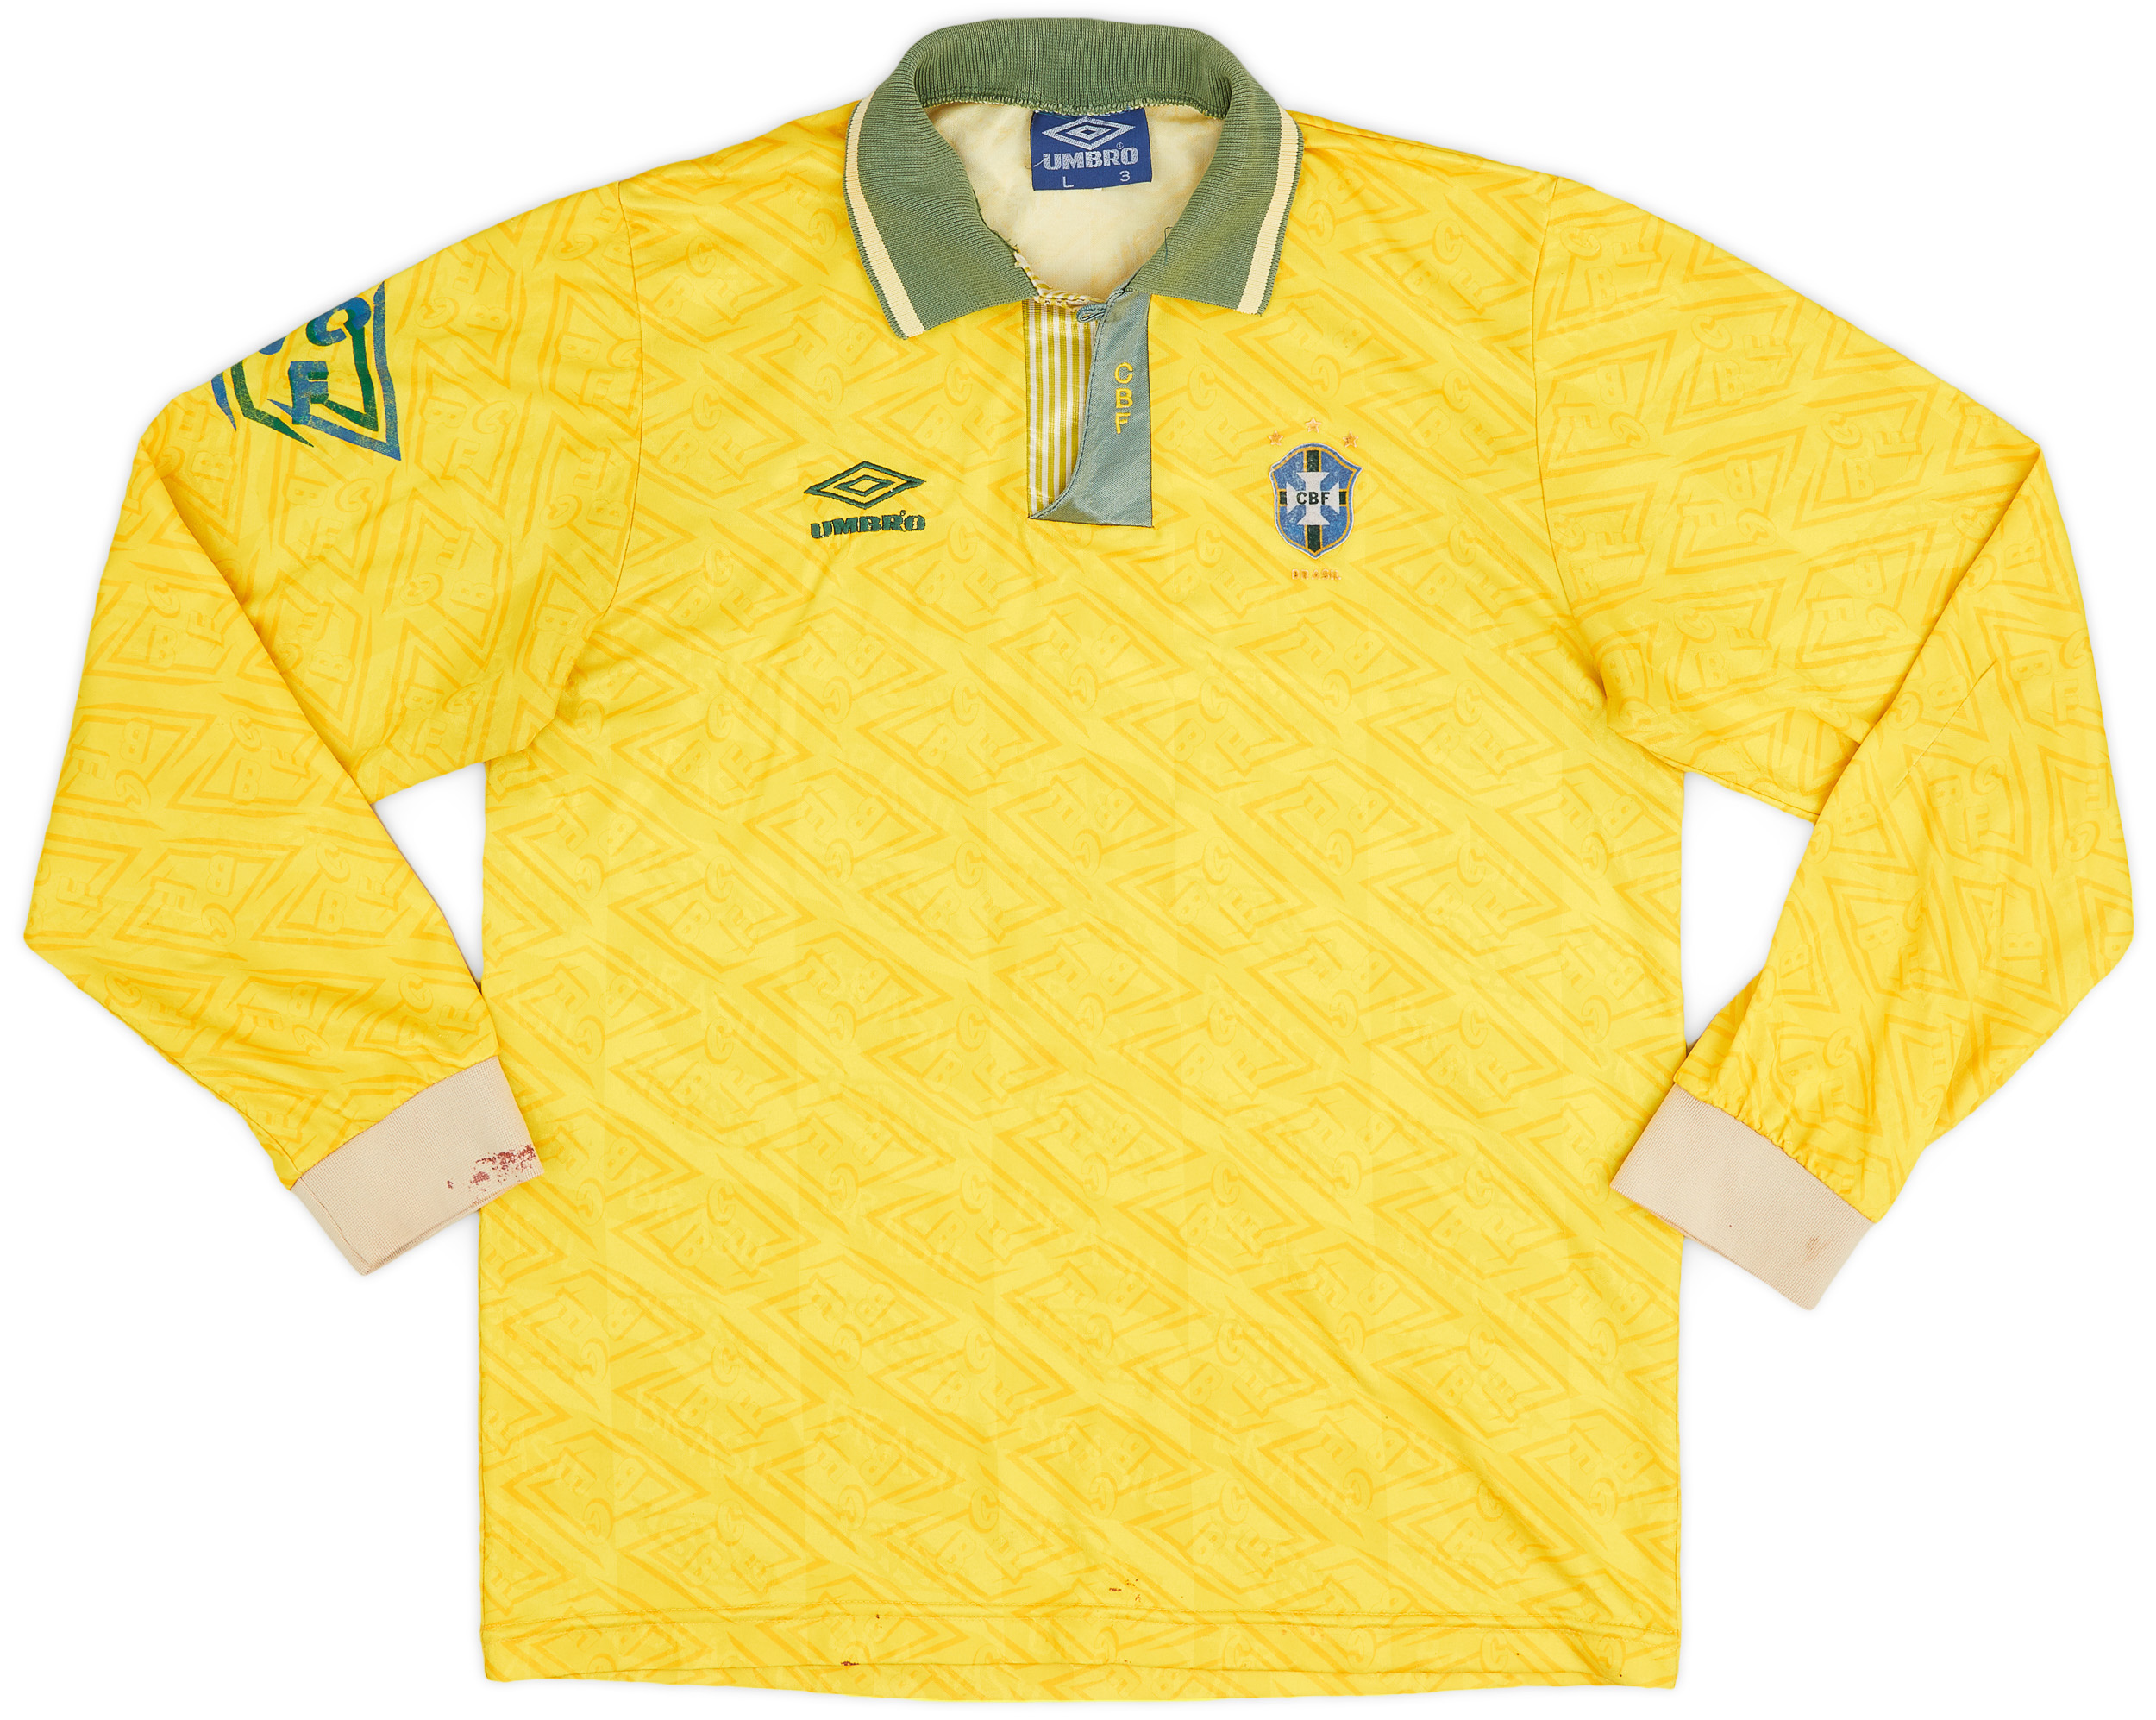 1991-93 Brazil Home Shirt - 5/10 - ()